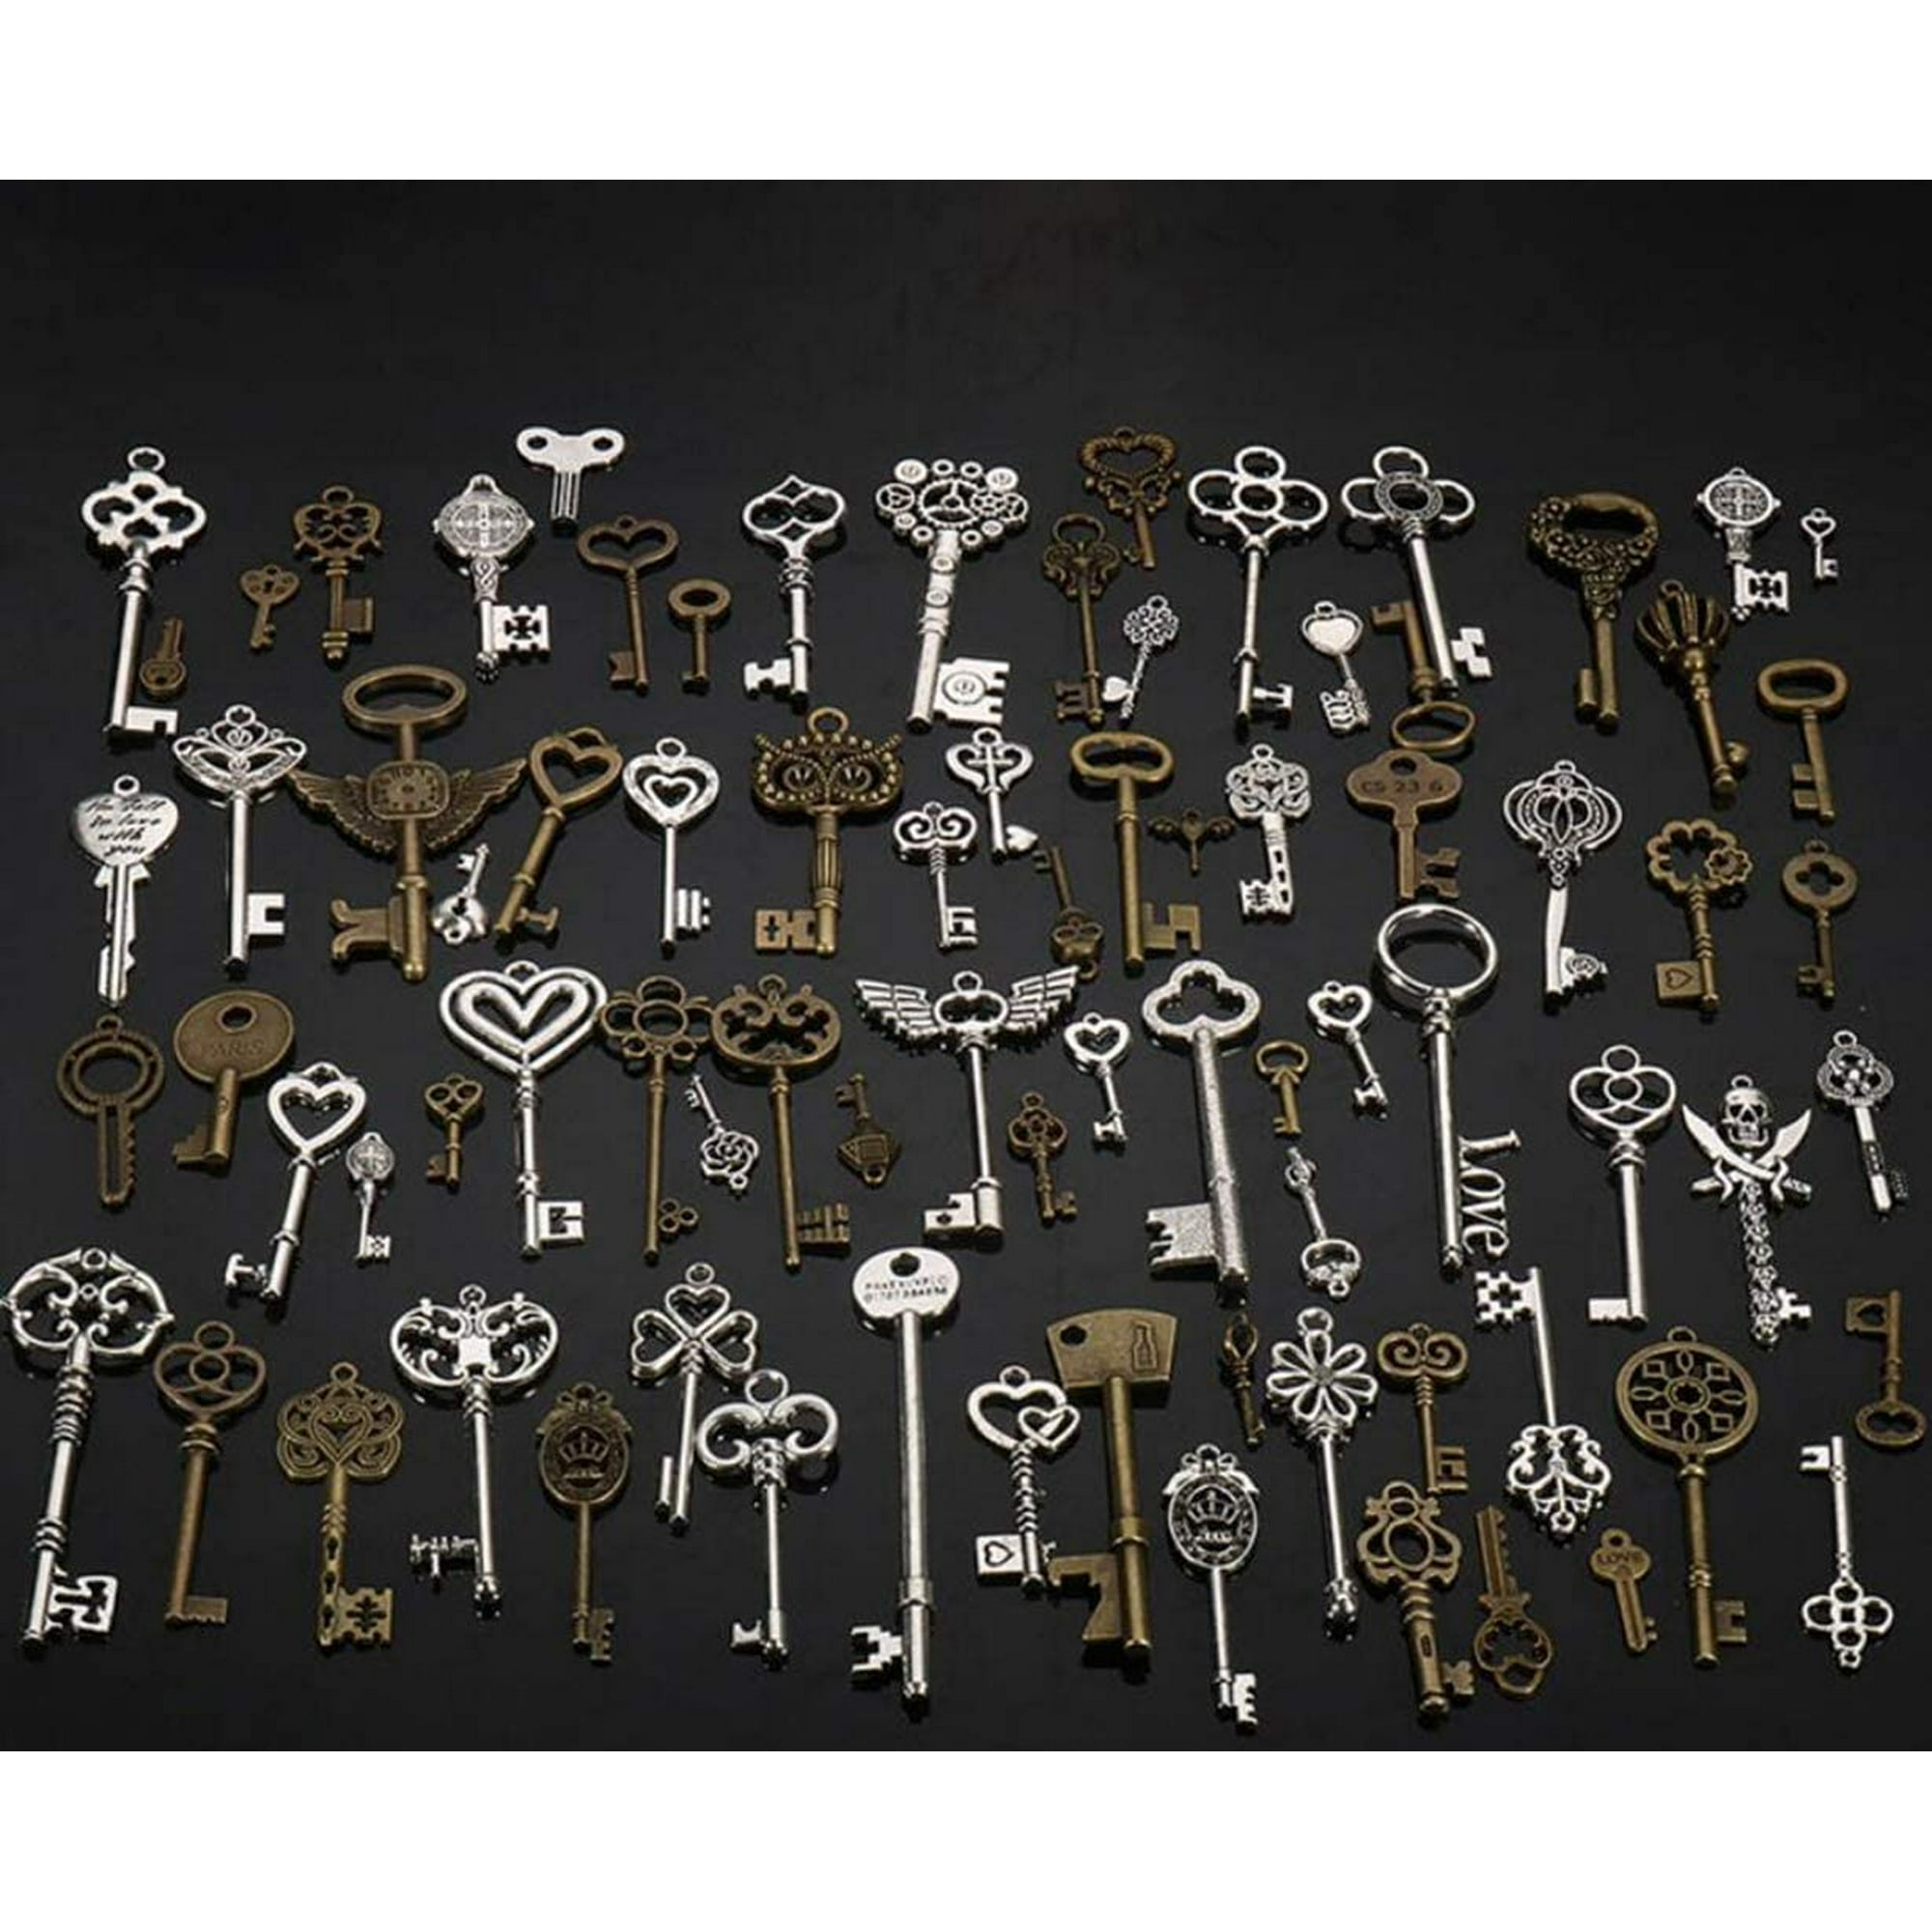 Dawht 80 Pcs Skeleton Keys Antique